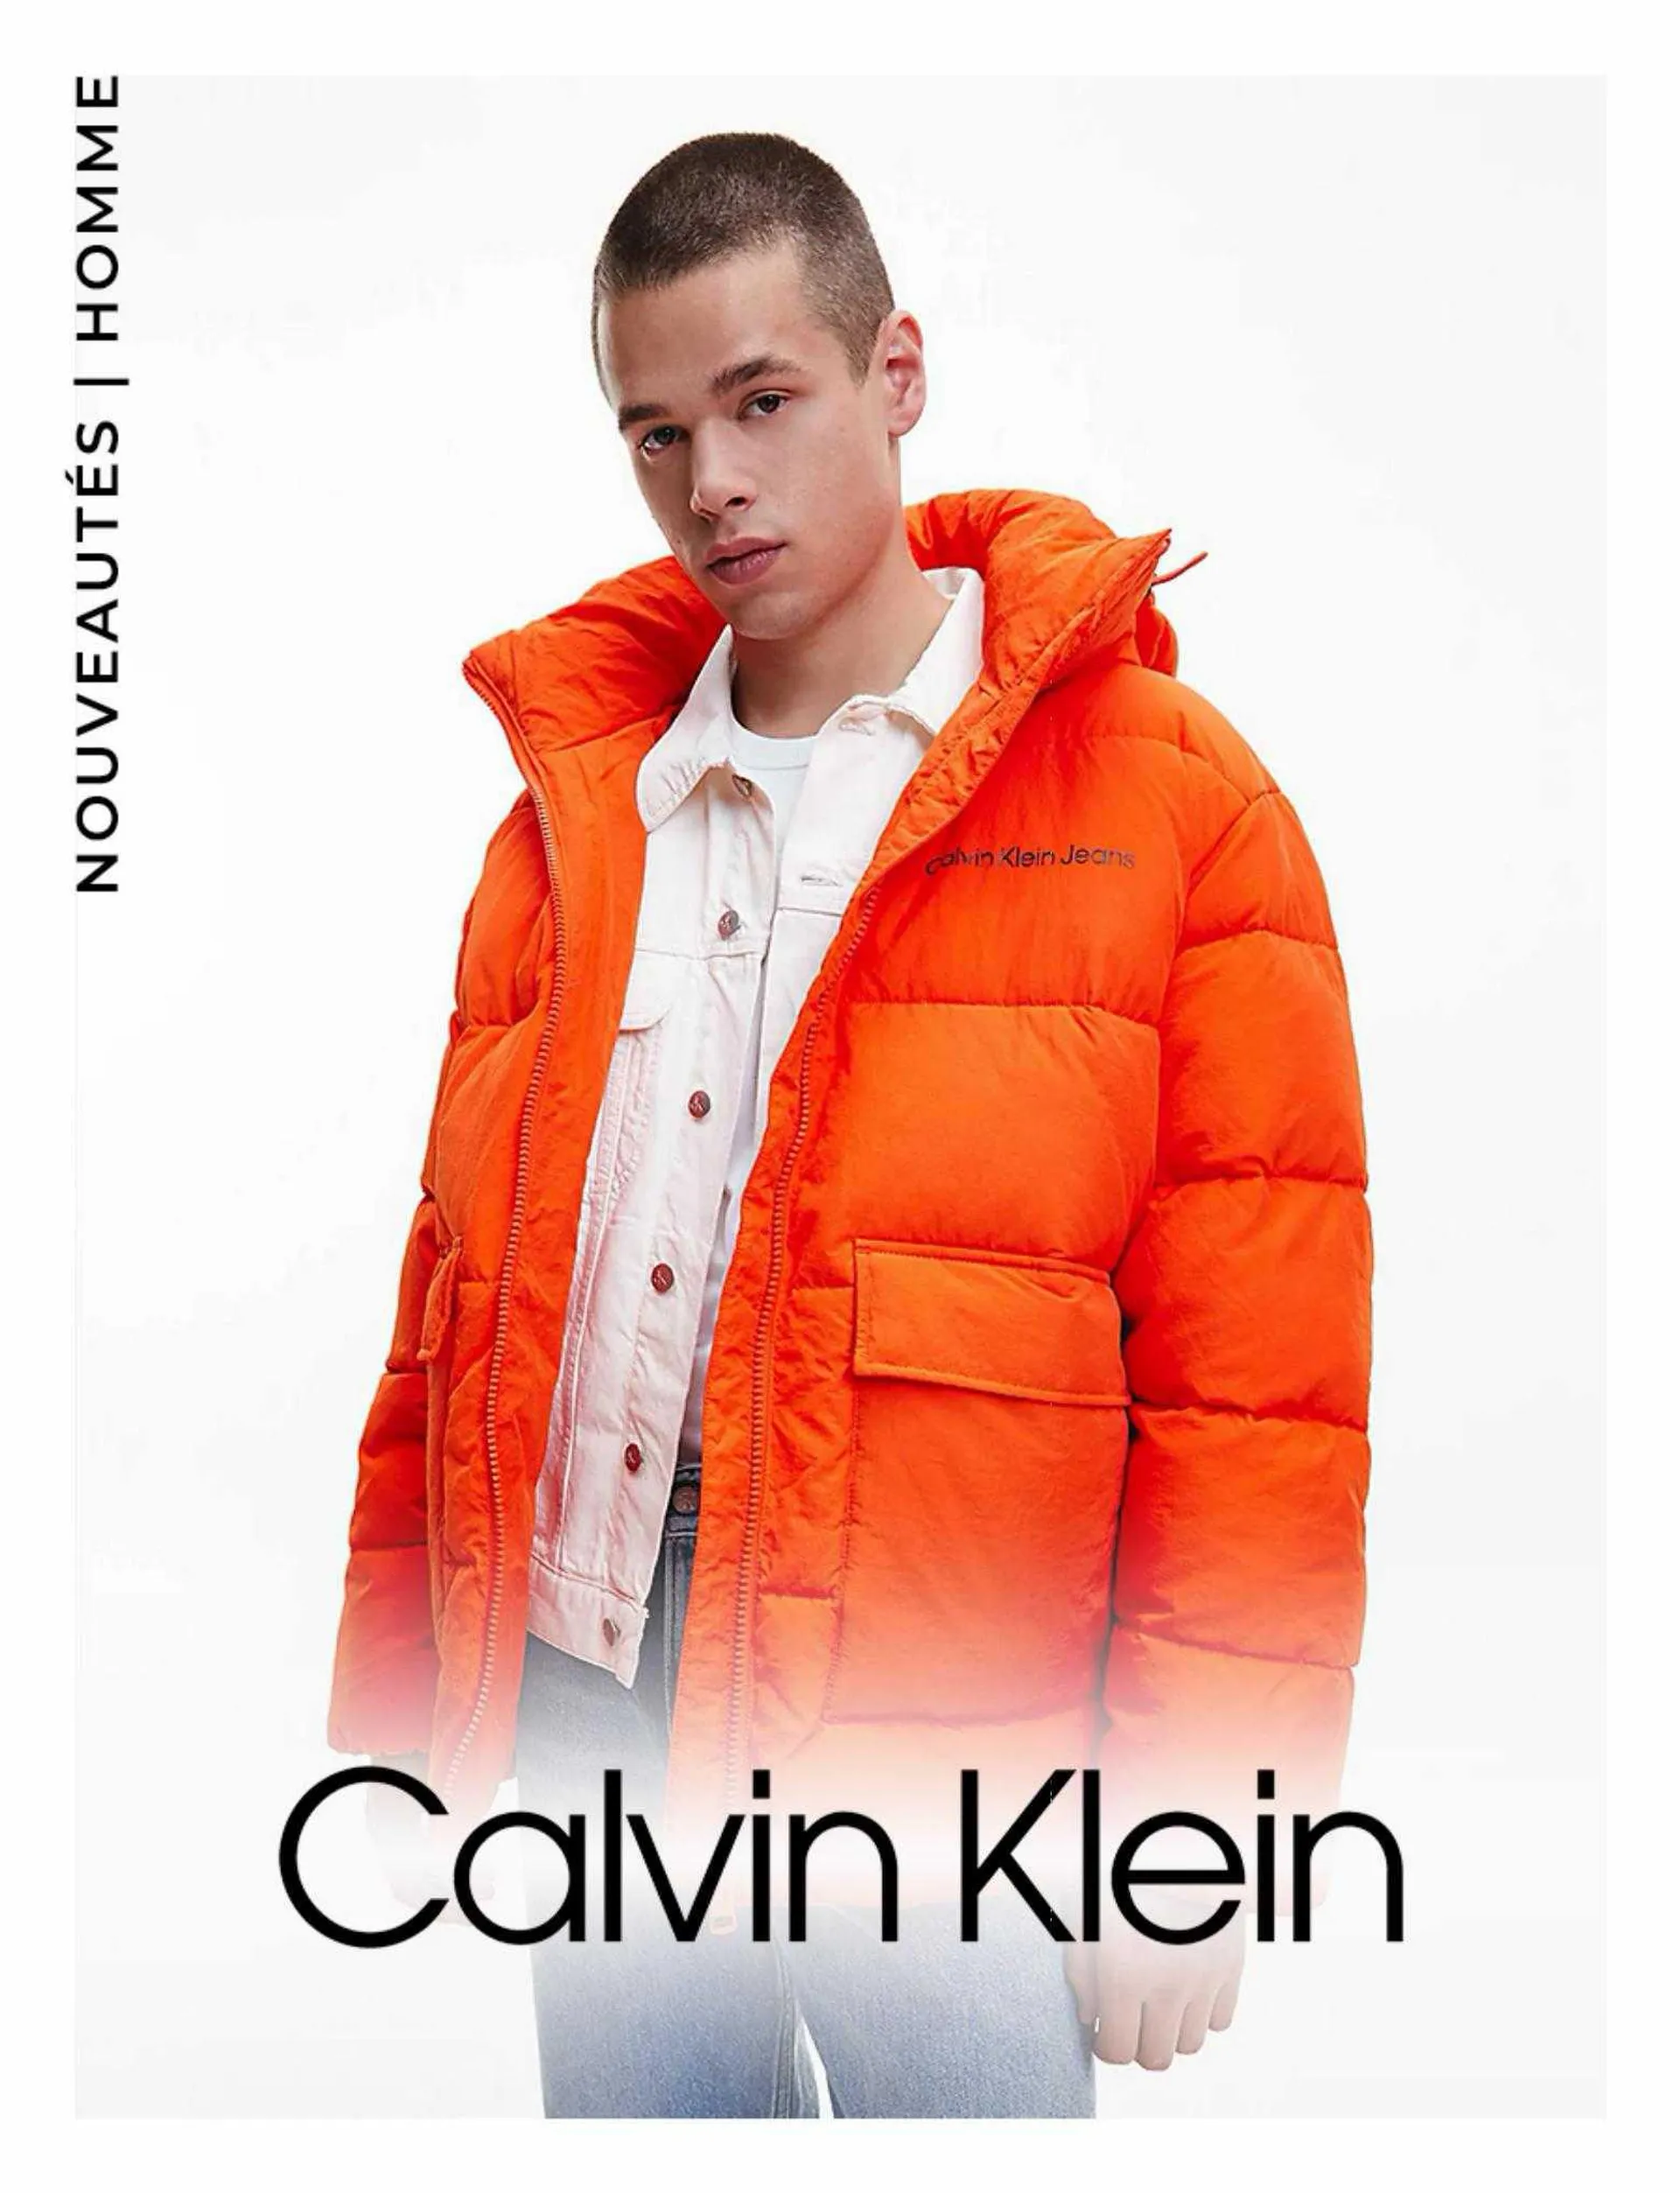 Catalogue Calvin Klein - 1